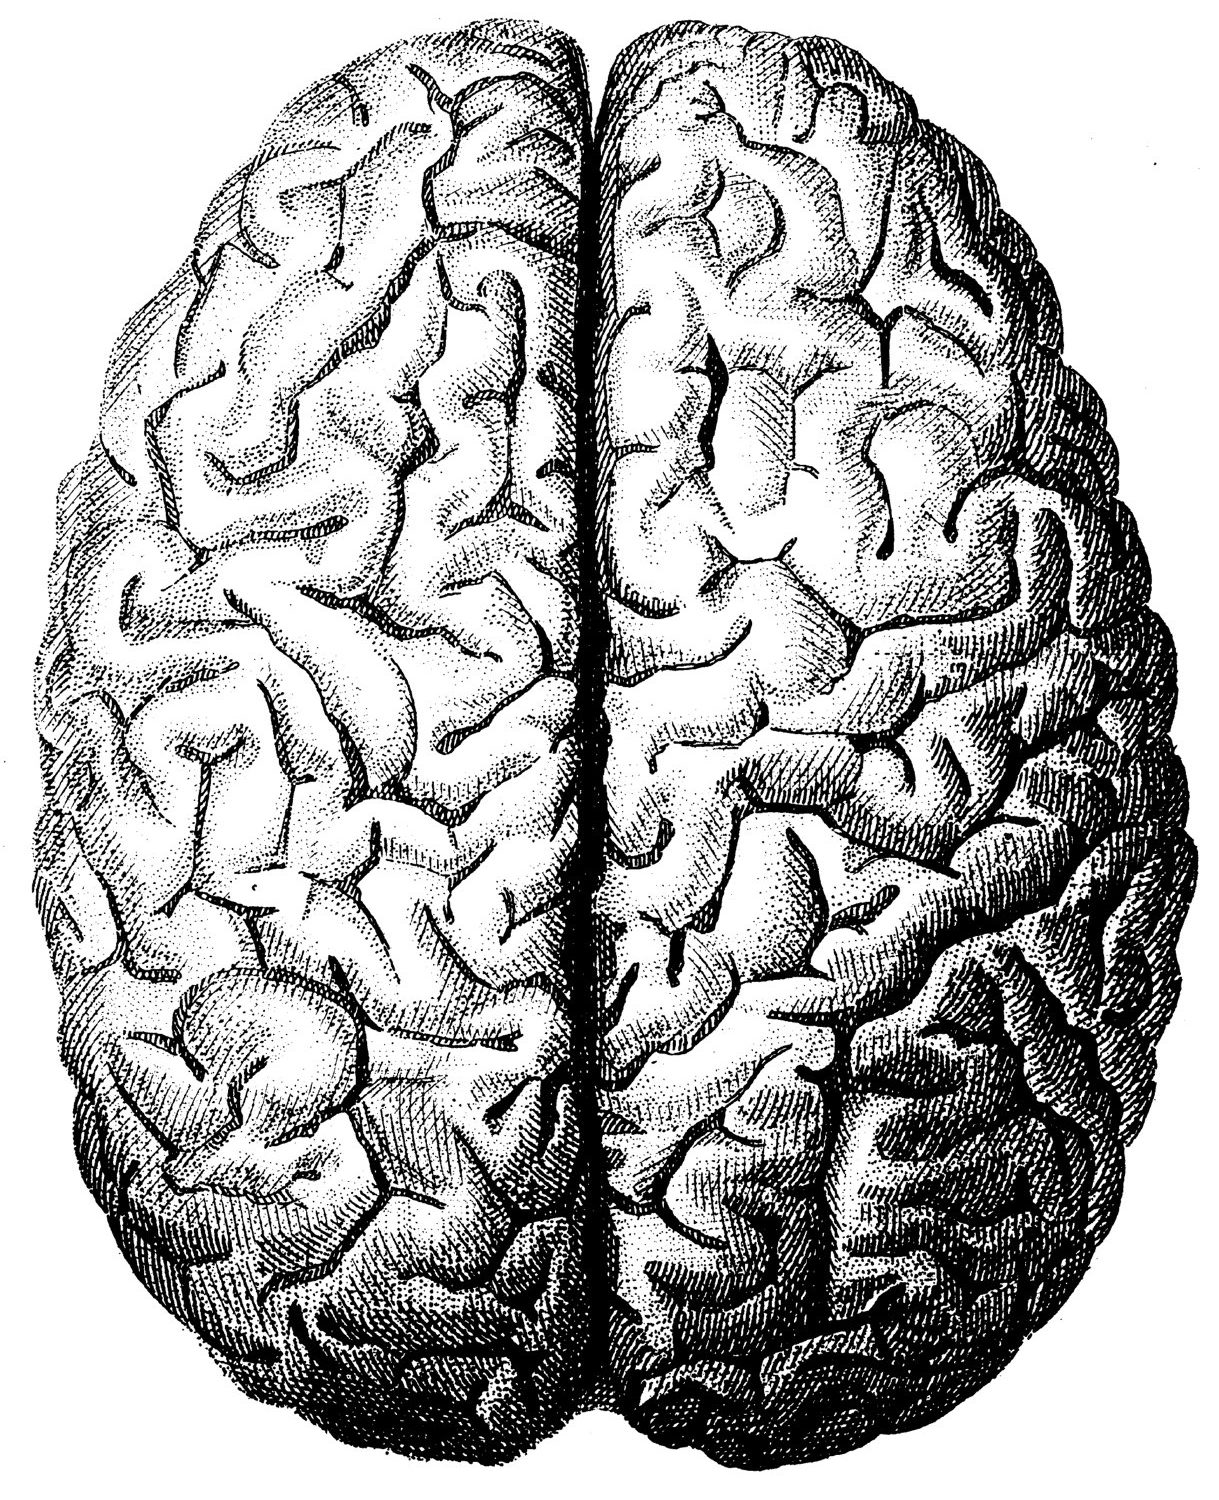 Разные полушария мозга. Мозг вид сверху. Человеческий мозг вид сверху.